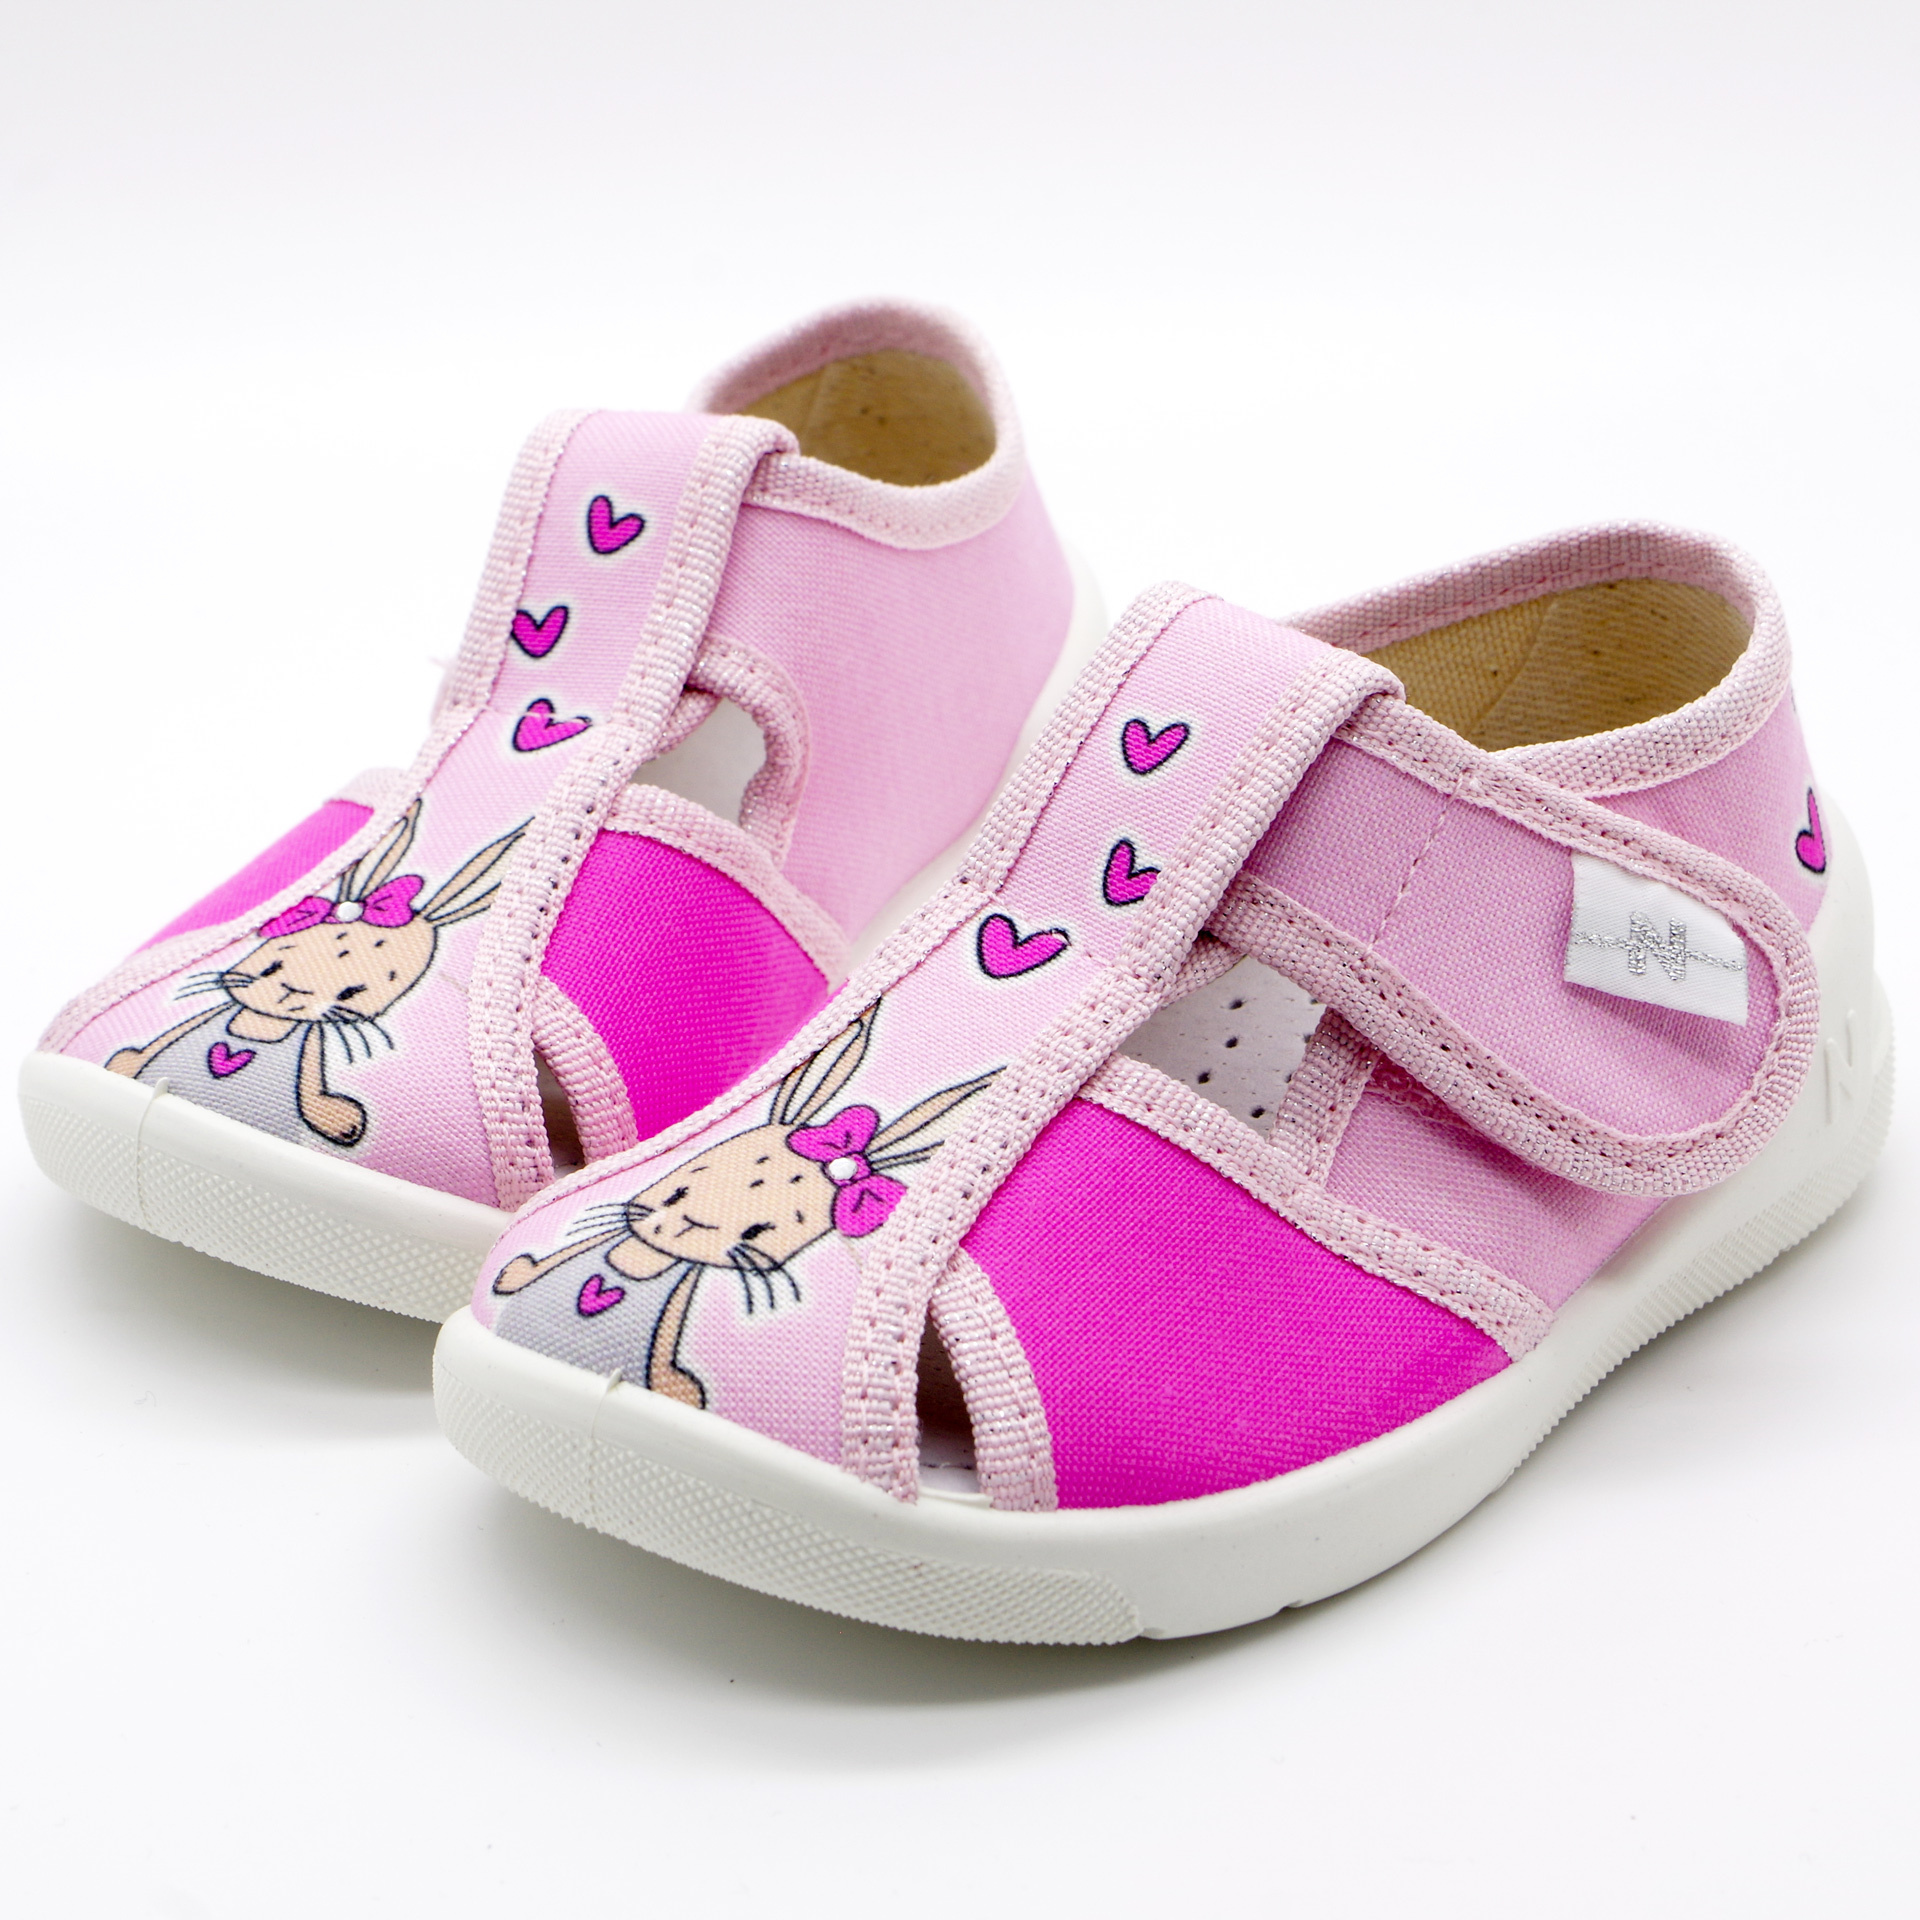 Текстильная обувь для девочек Тапочки Merlin (2205) цвет Розовый 18-25 размеры – Sole Kids. Фото 3